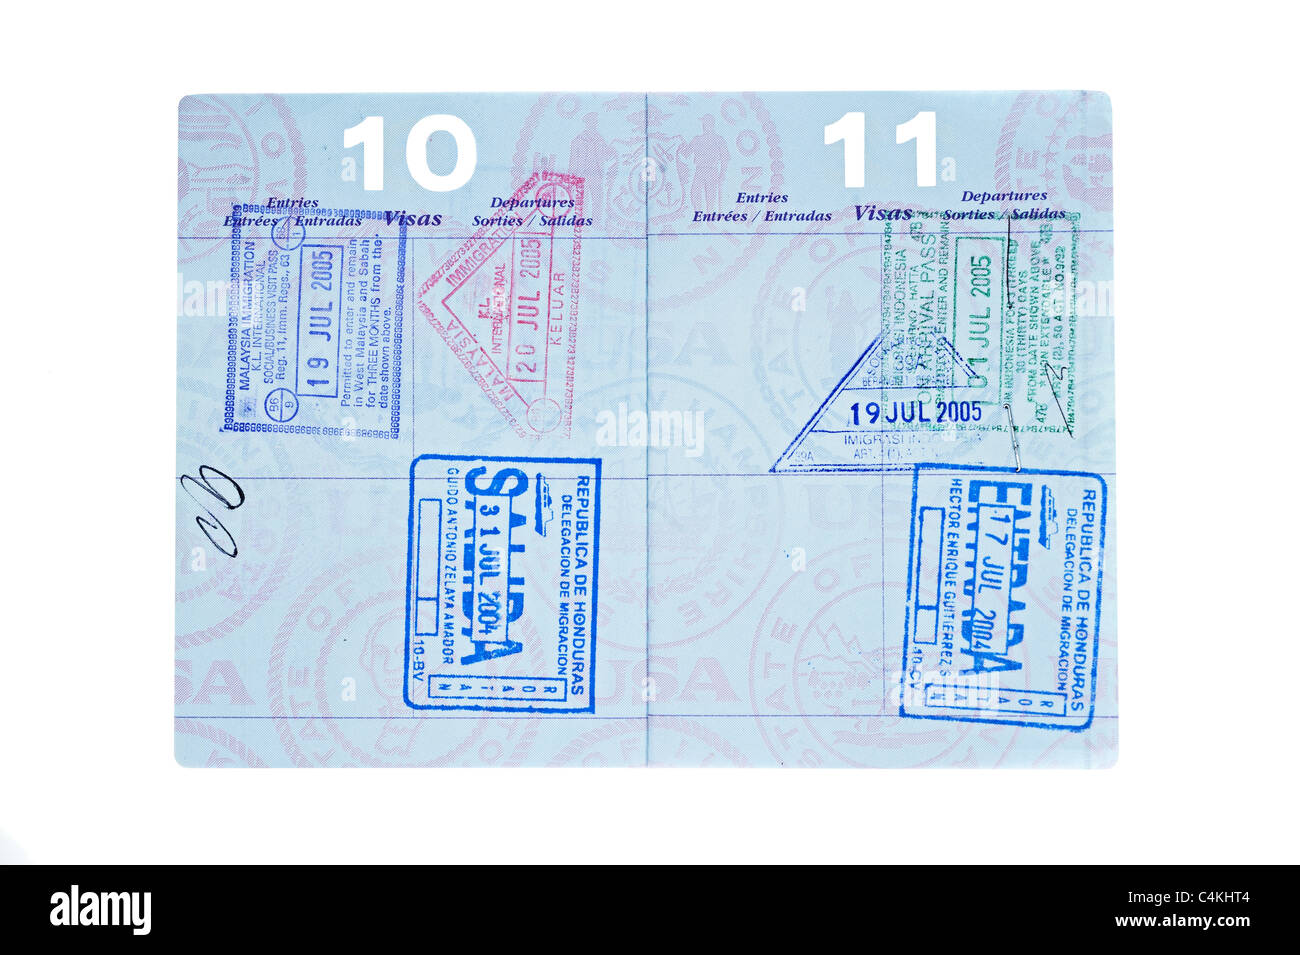 Eine gebrauchte Reisepass mit Visum Briefmarken aus Malaysia, Indonesien und Honduras. Stockfoto